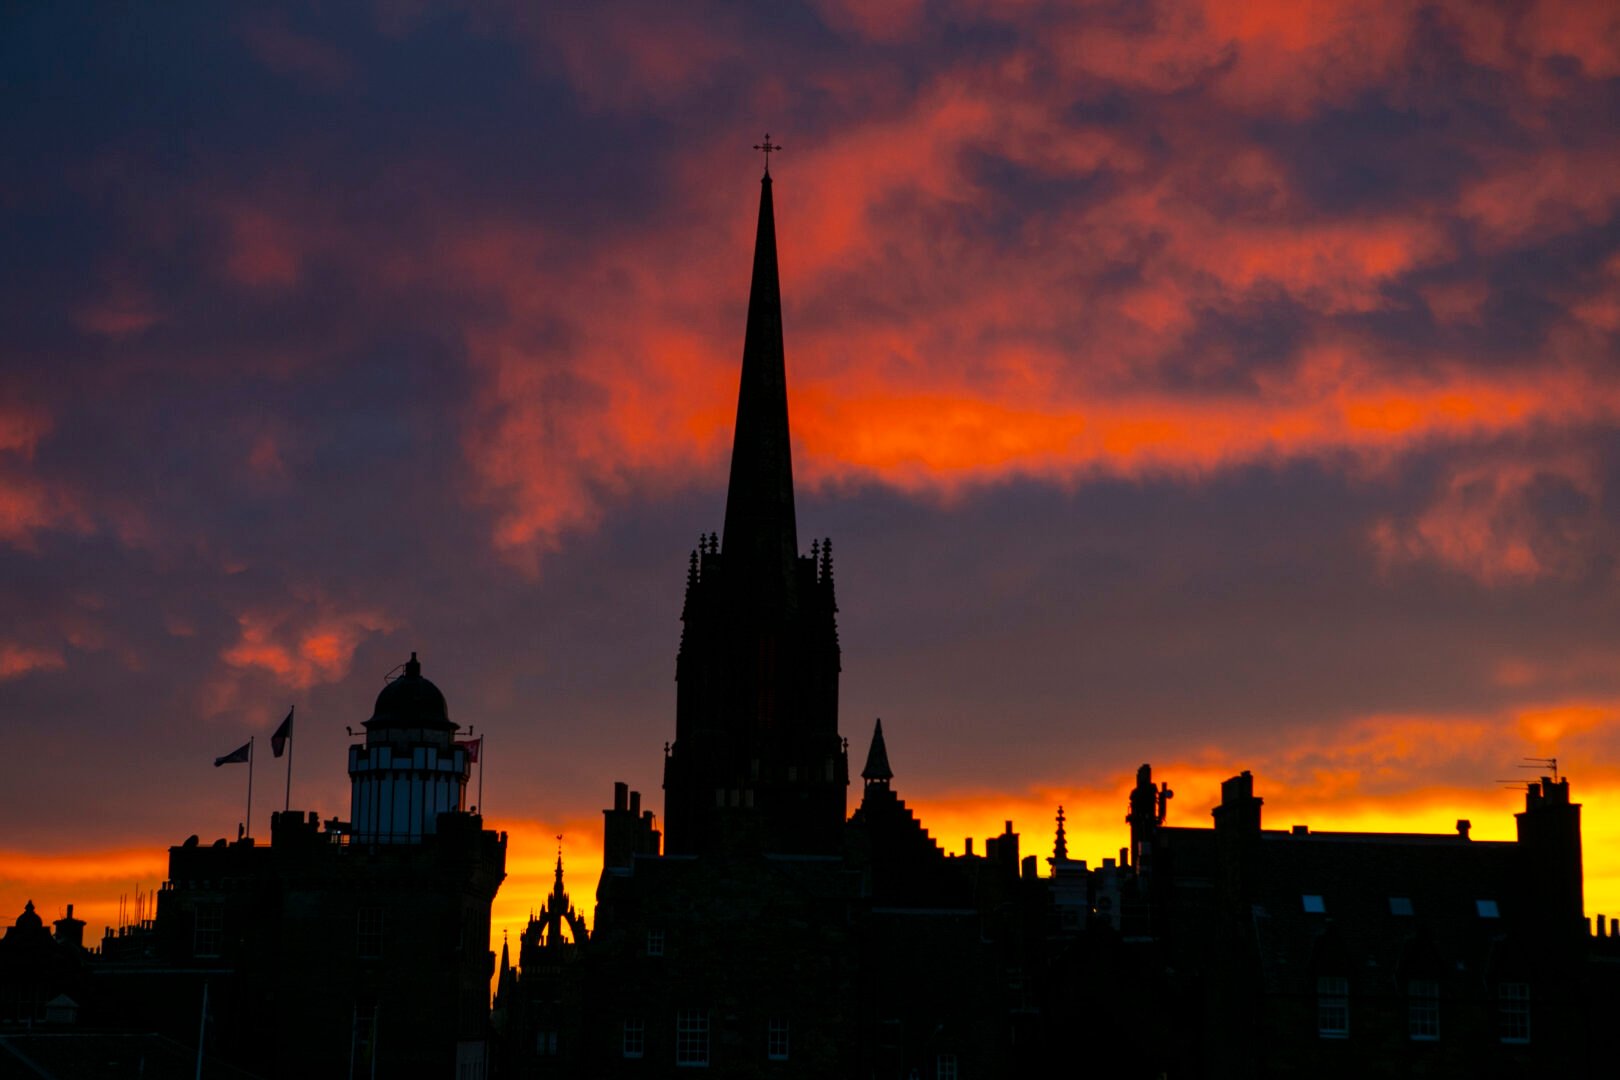 Sunsetting over The Hub in Edinburgh. Red sky.